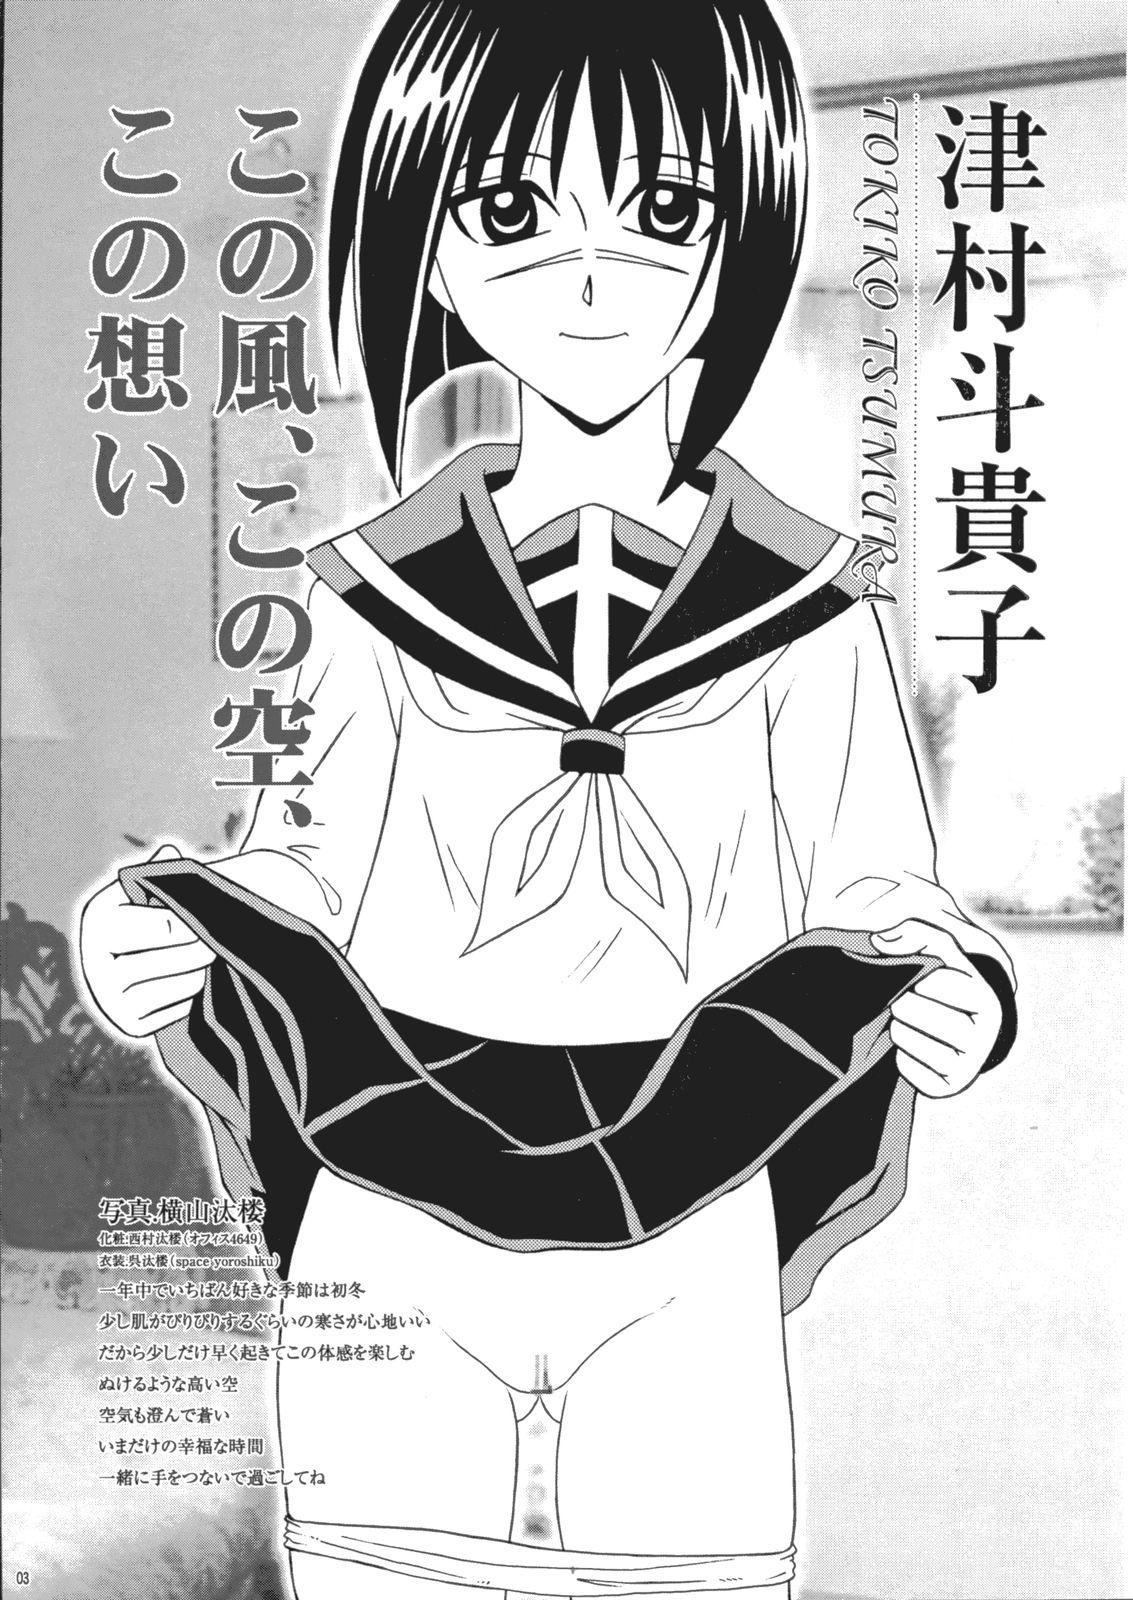 Oiled Saku-chan Kurabu Vol.03 - Naruto One piece Ichigo 100 Is Hikaru no go Banging - Page 2